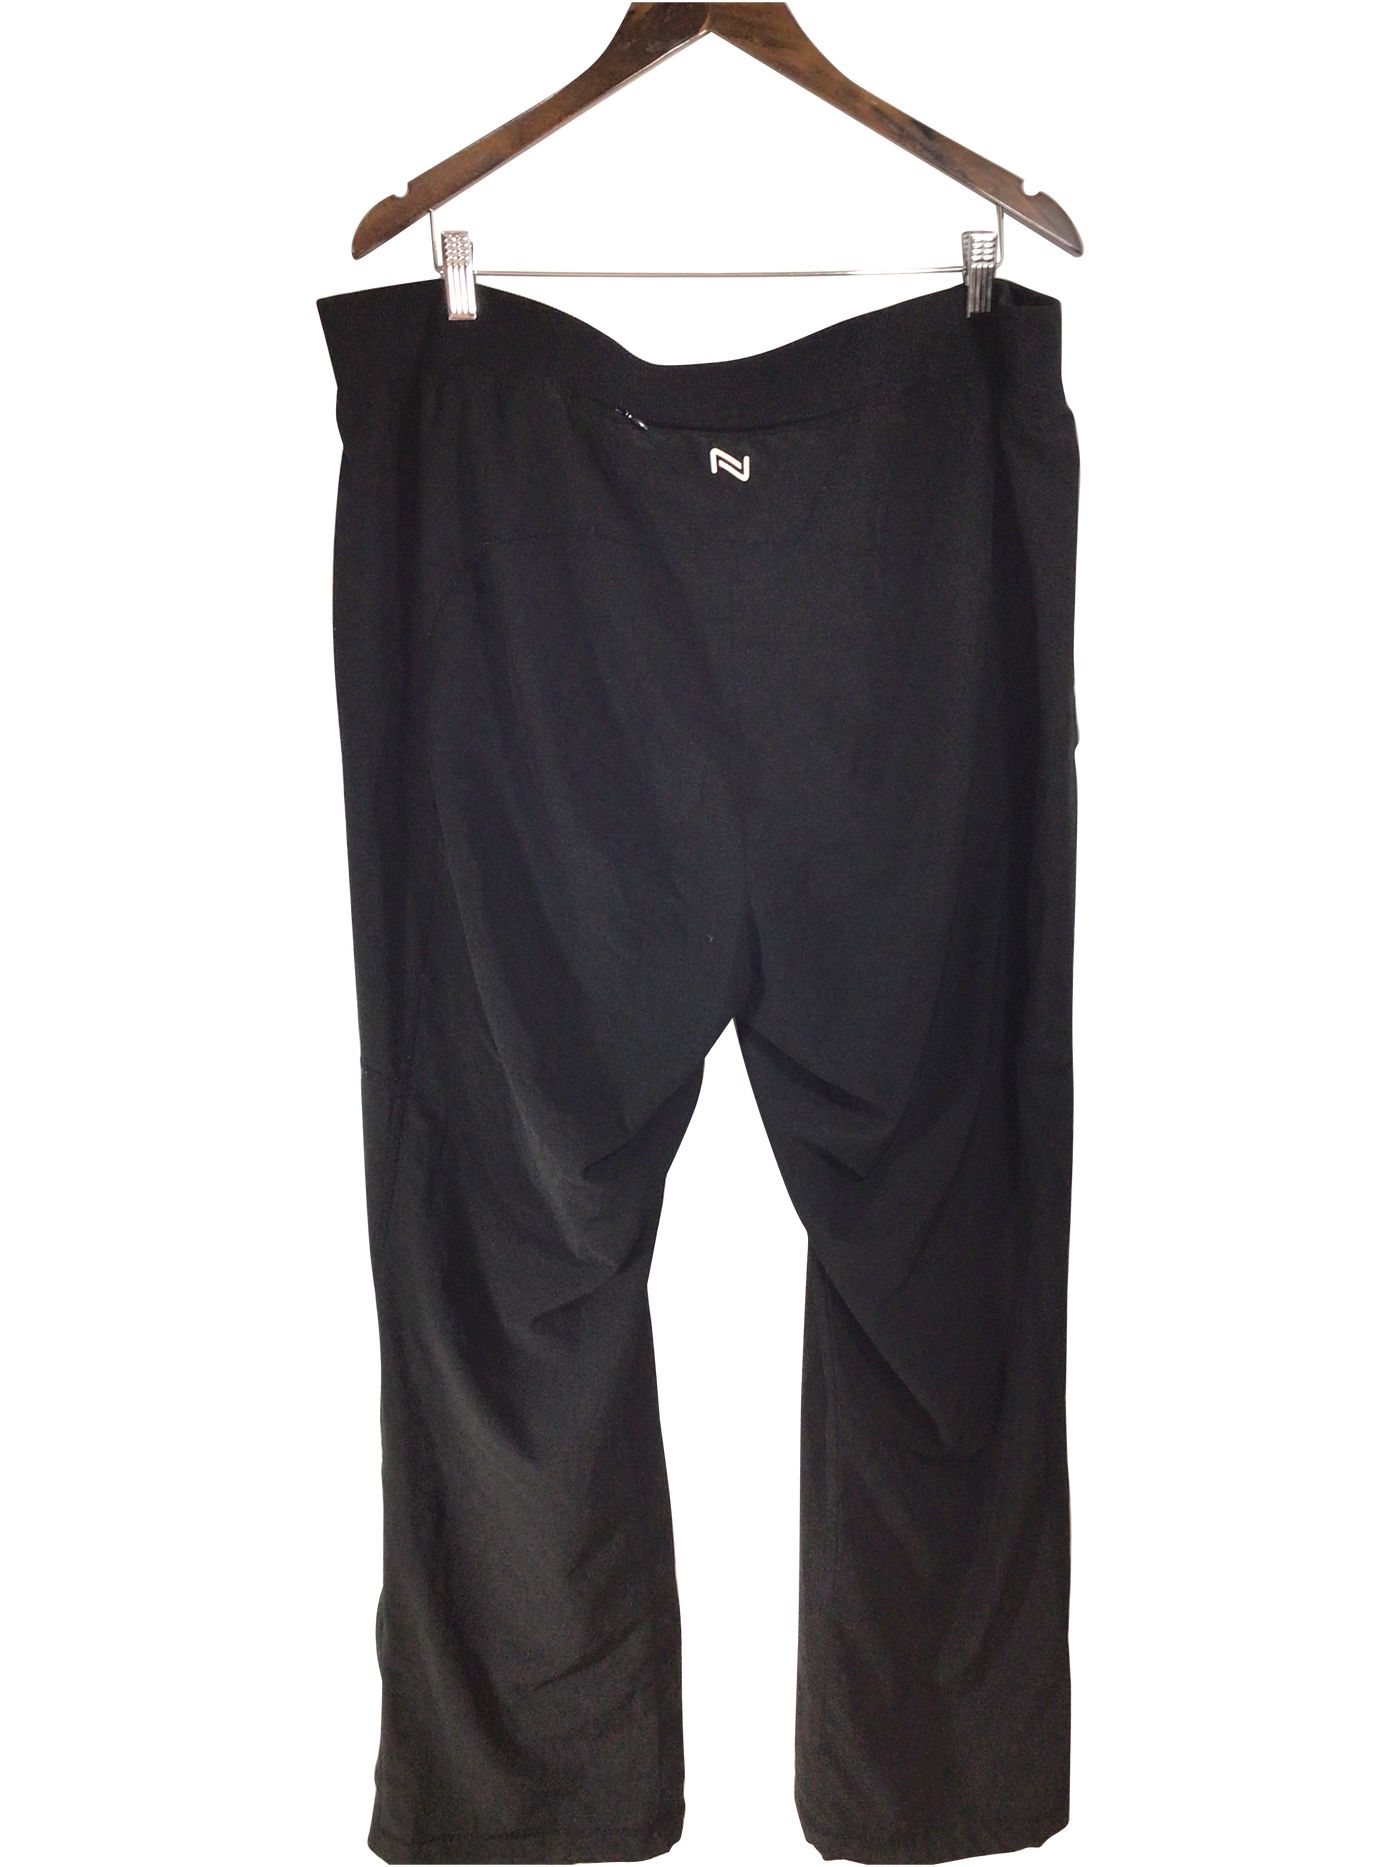 NOLA Women Work Pants Regular fit in Black - Size 2X | 4.94 $ KOOP